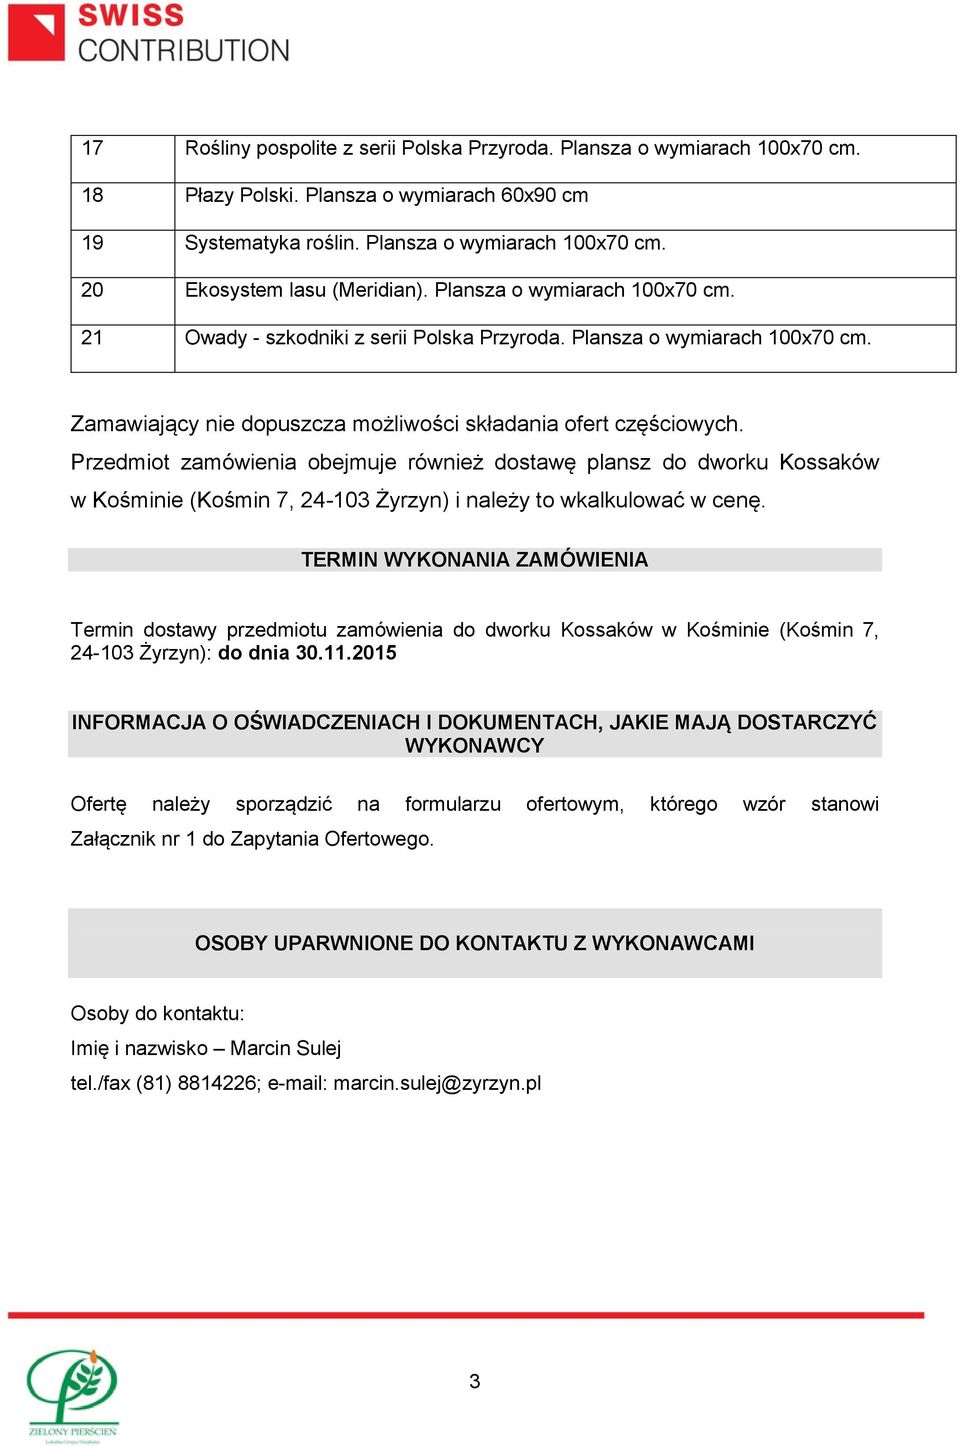 Przedmiot zamówienia obejmuje również dostawę plansz do dworku Kossaków w Kośminie (Kośmin 7, 24-103 Żyrzyn) i należy to wkalkulować w cenę.